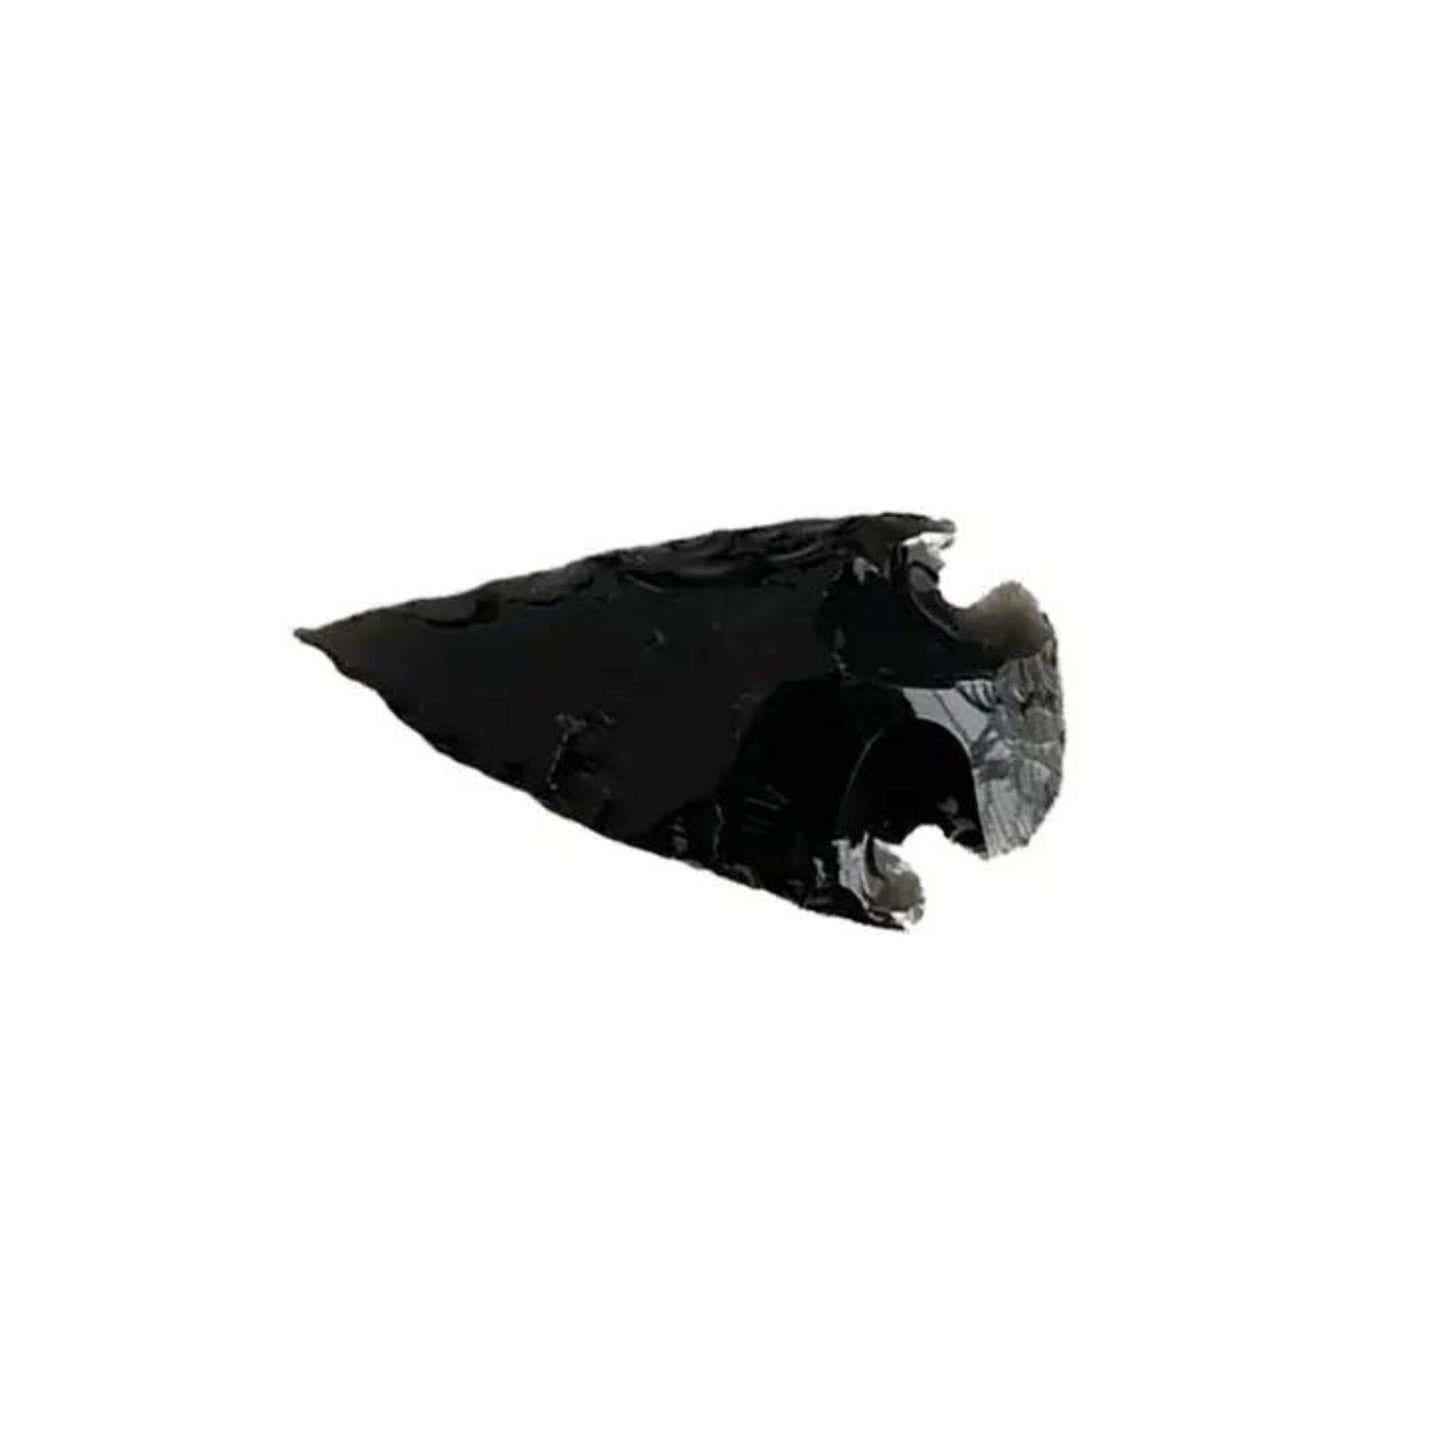 Black obsidian arrowhead 3-4cm 